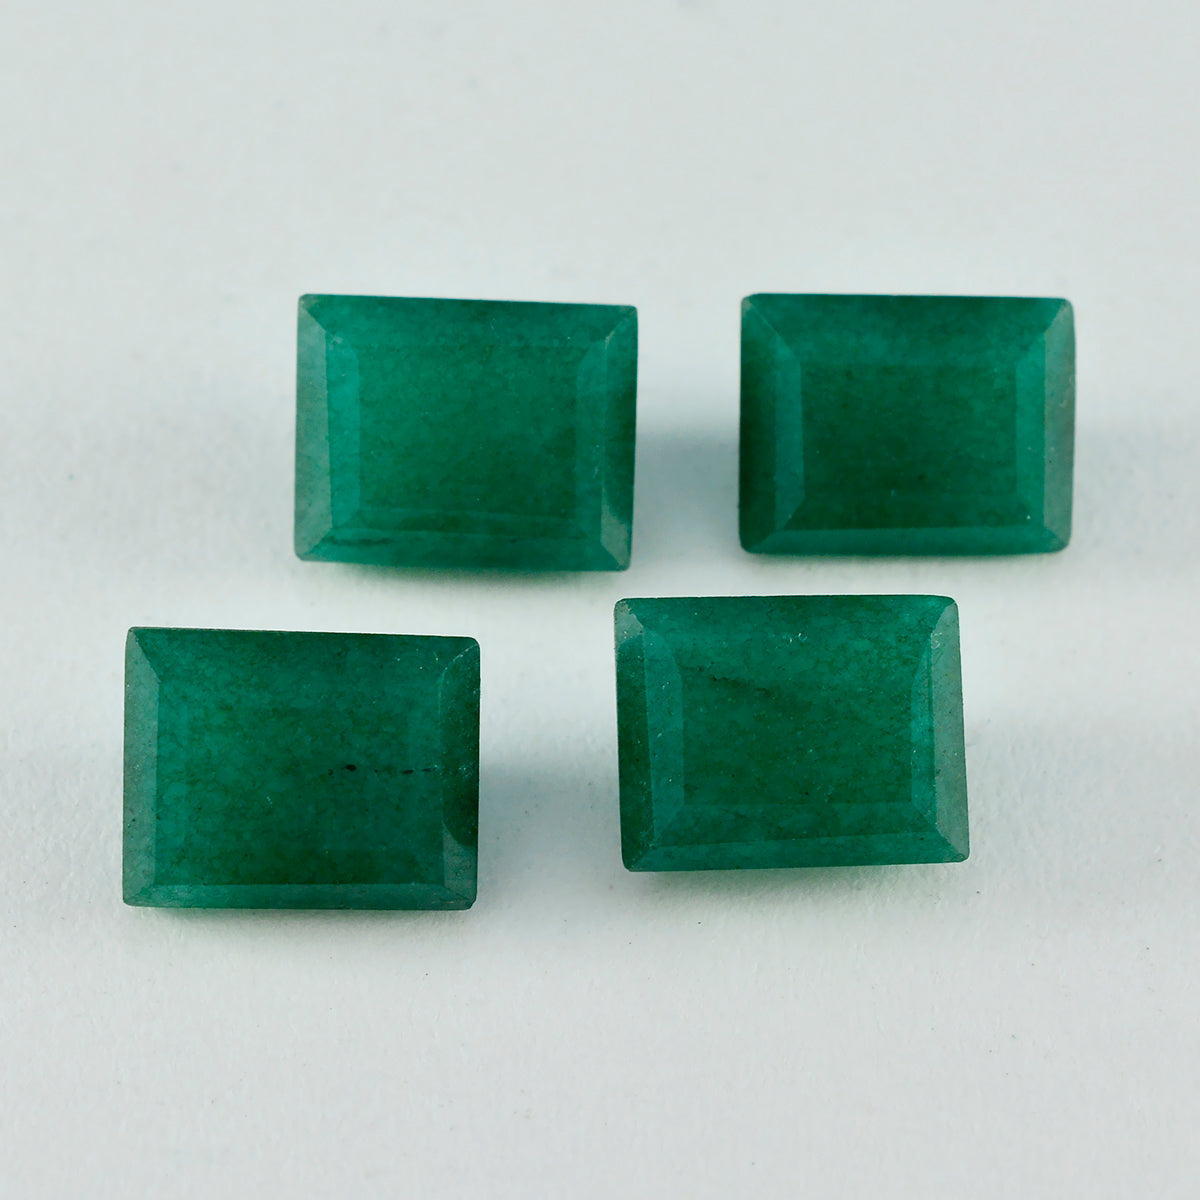 Riyogems 1PC natuurlijke groene jaspis gefacetteerd 12x16 mm achthoekige vorm uitstekende kwaliteit edelsteen